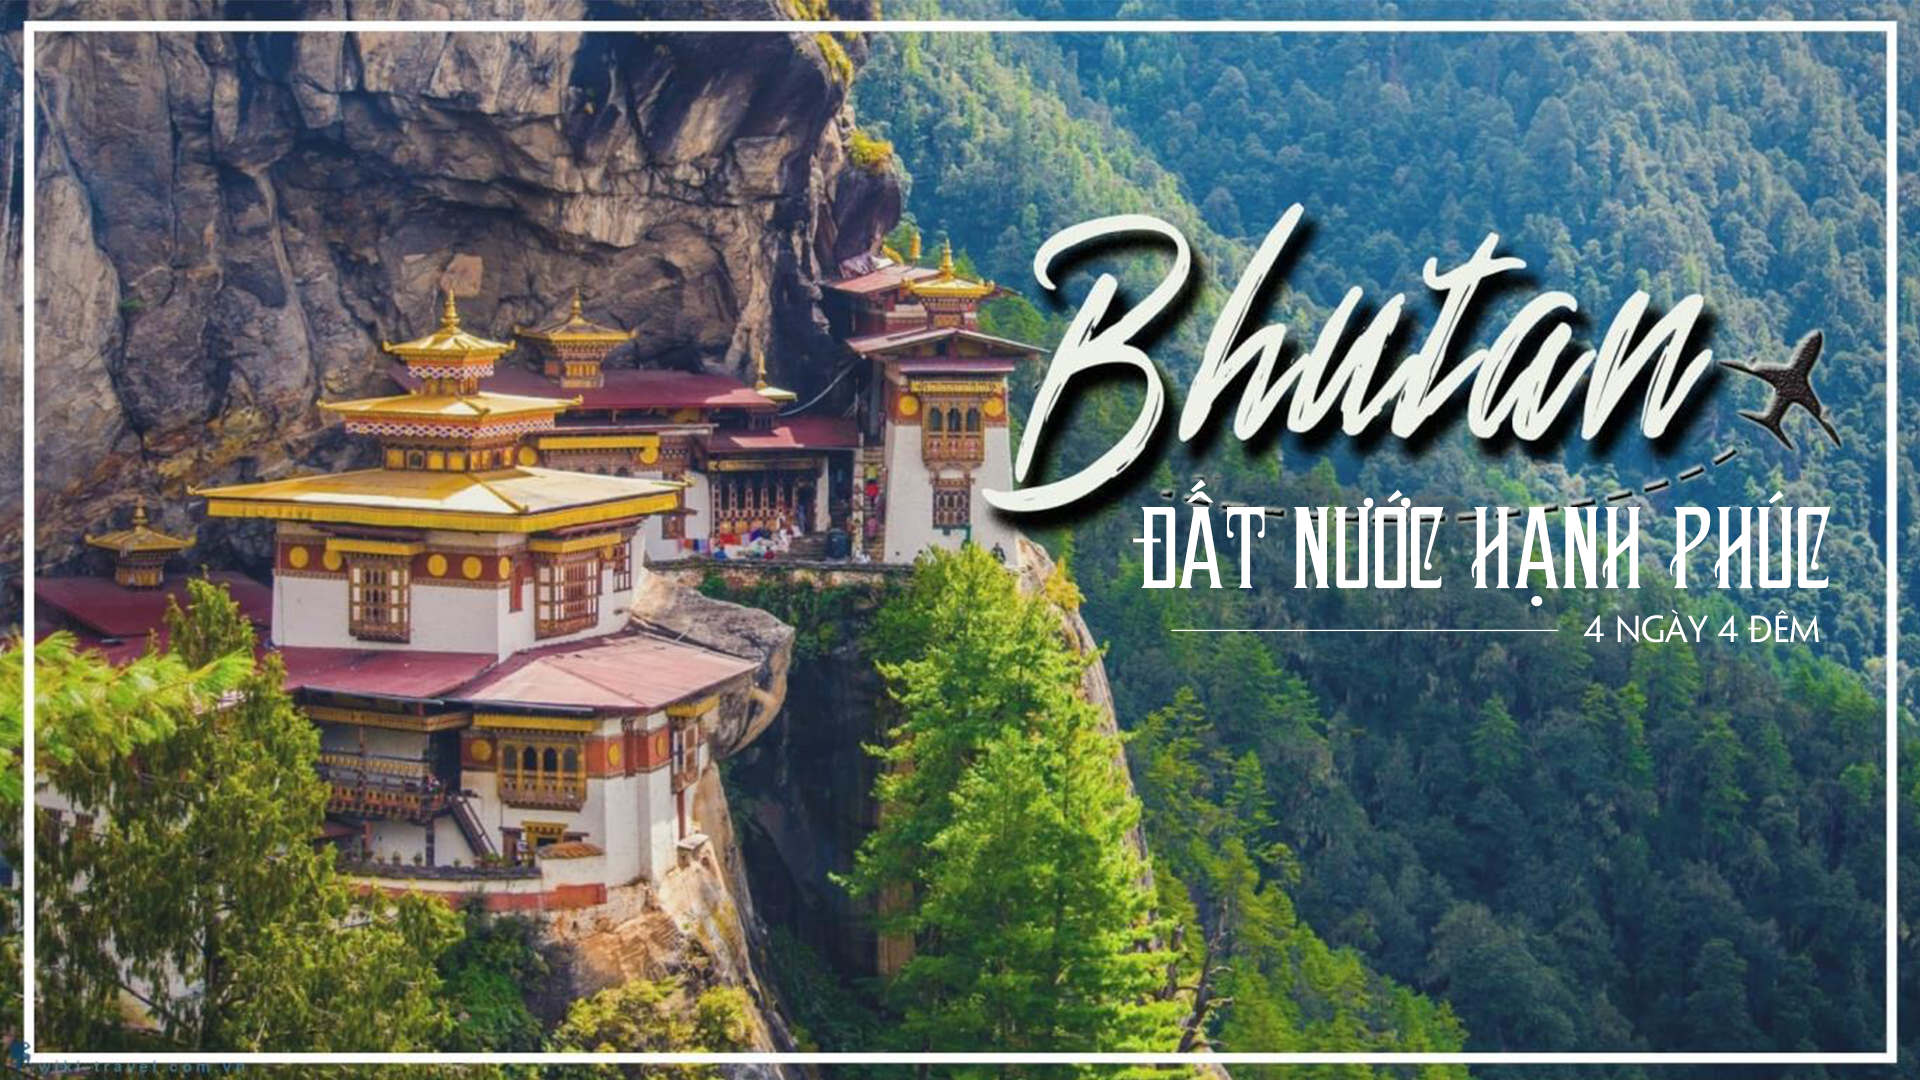 Du lịch Bhutan - Hành trình hạnh phúc